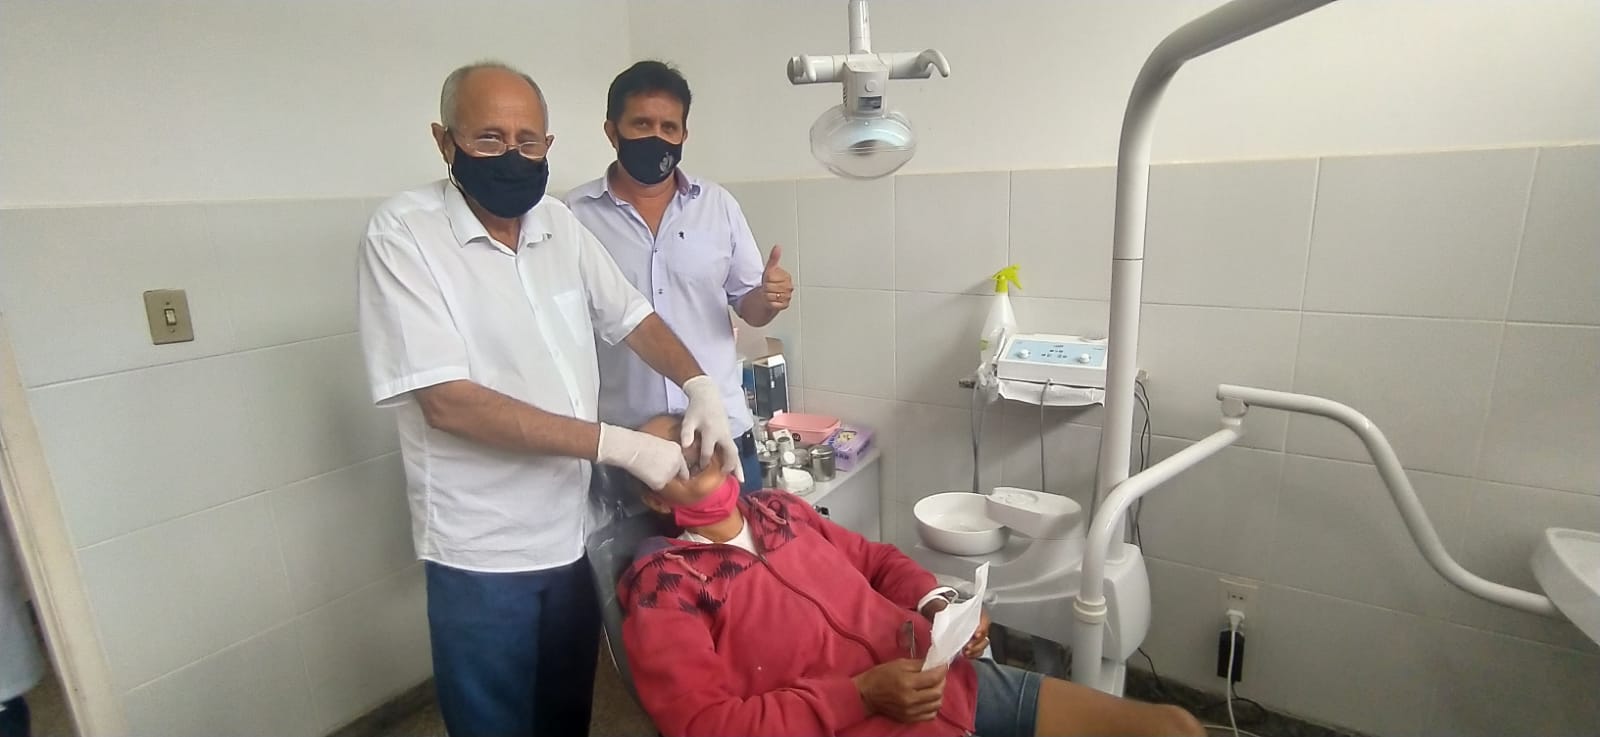 O prefeito de Goiandira Allisson Peixoto acompanhado do vice prefeito e cirurgião dentista Dr Neusmar Vaz durante o lançamento do programa de moldagem de próteses dentárias